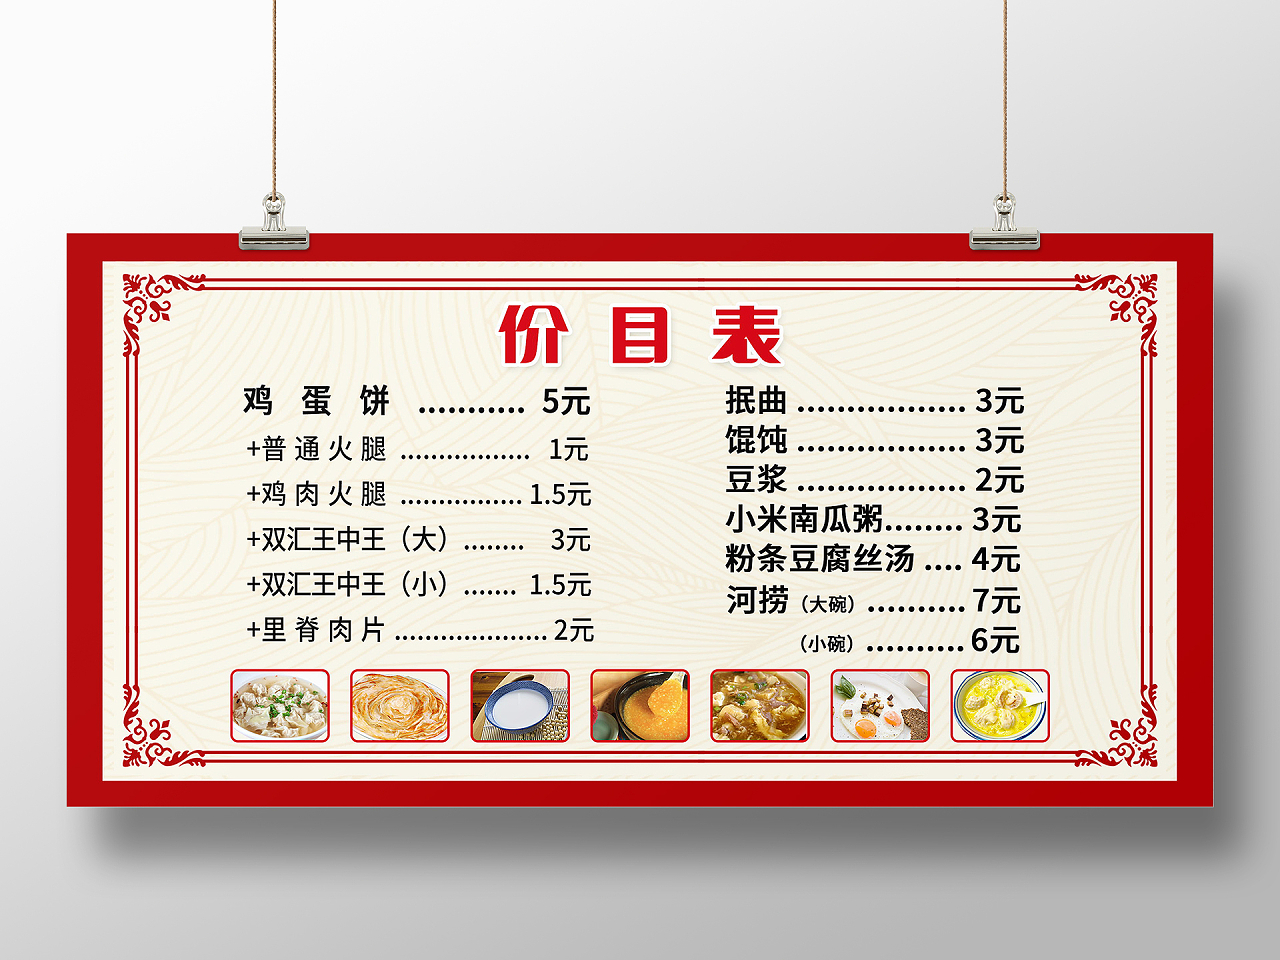 早餐价格表美食价格表展板模板设计